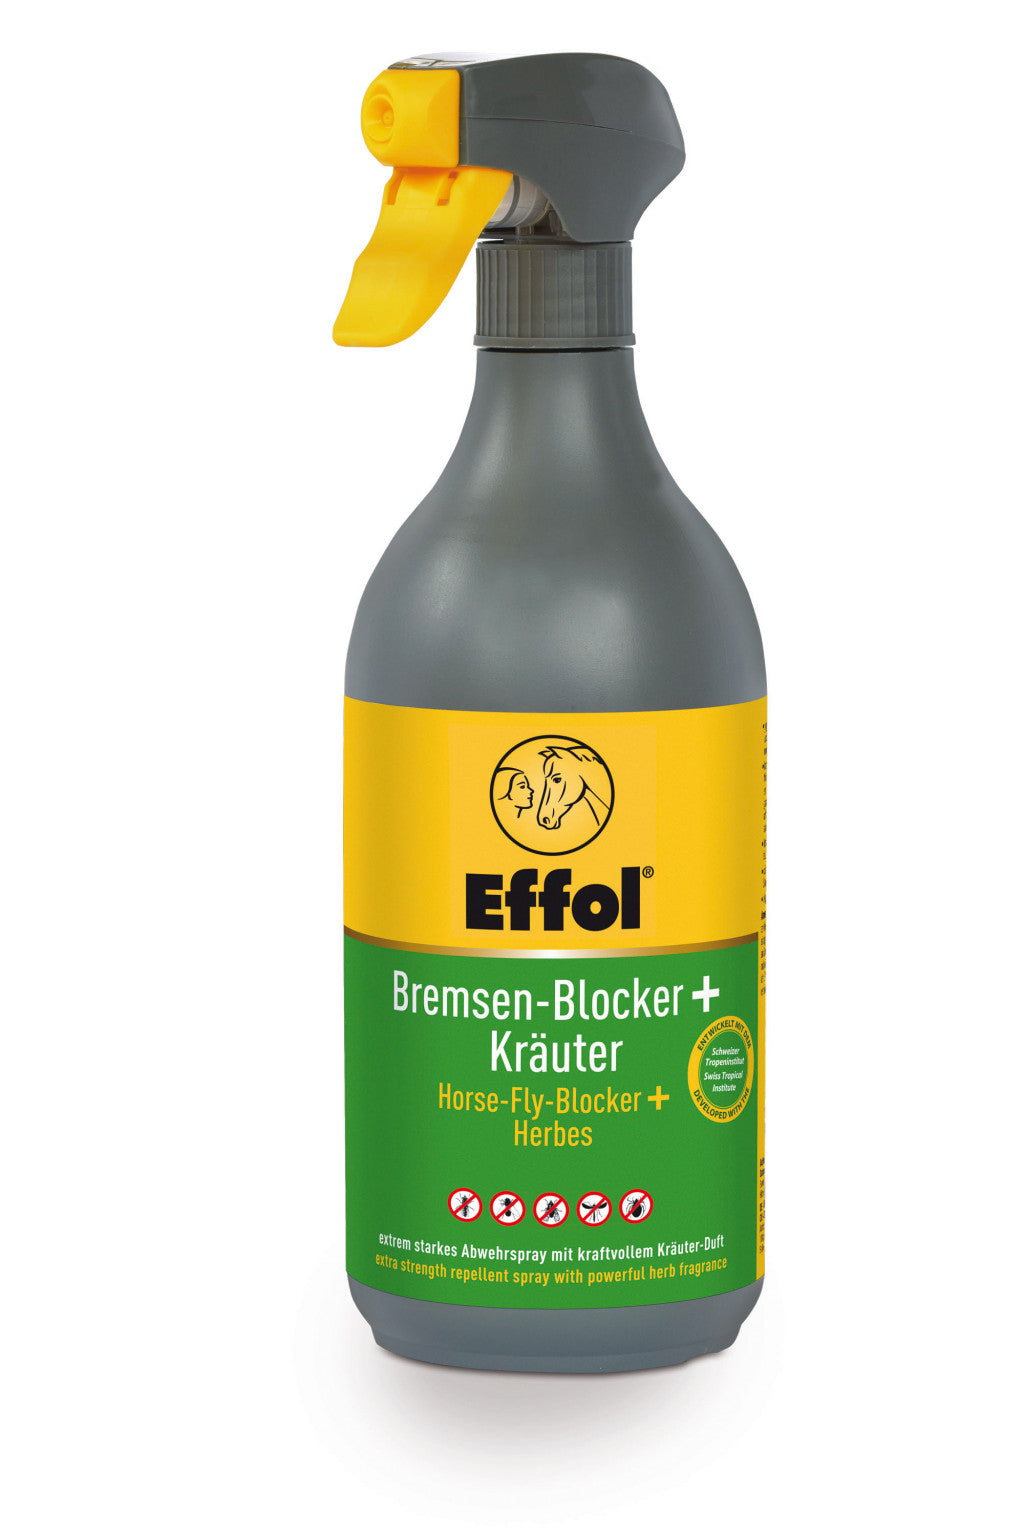 Effol Bremsen-Blocker + Kräuter